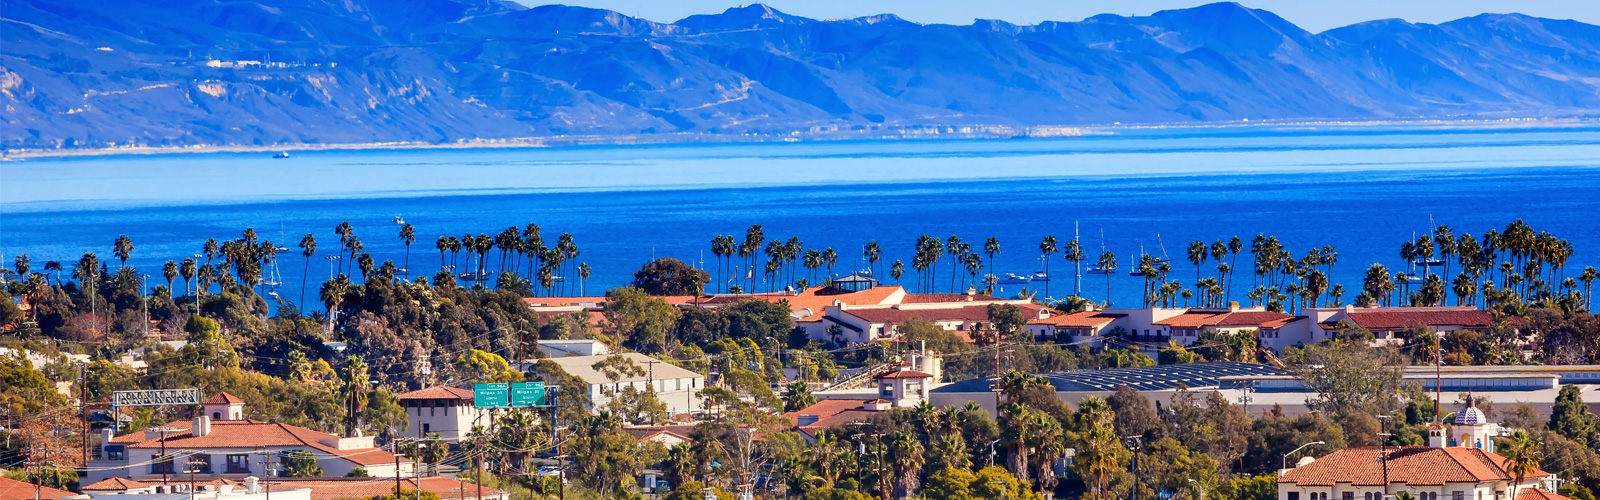 Photo of Santa Barbara view of the bay